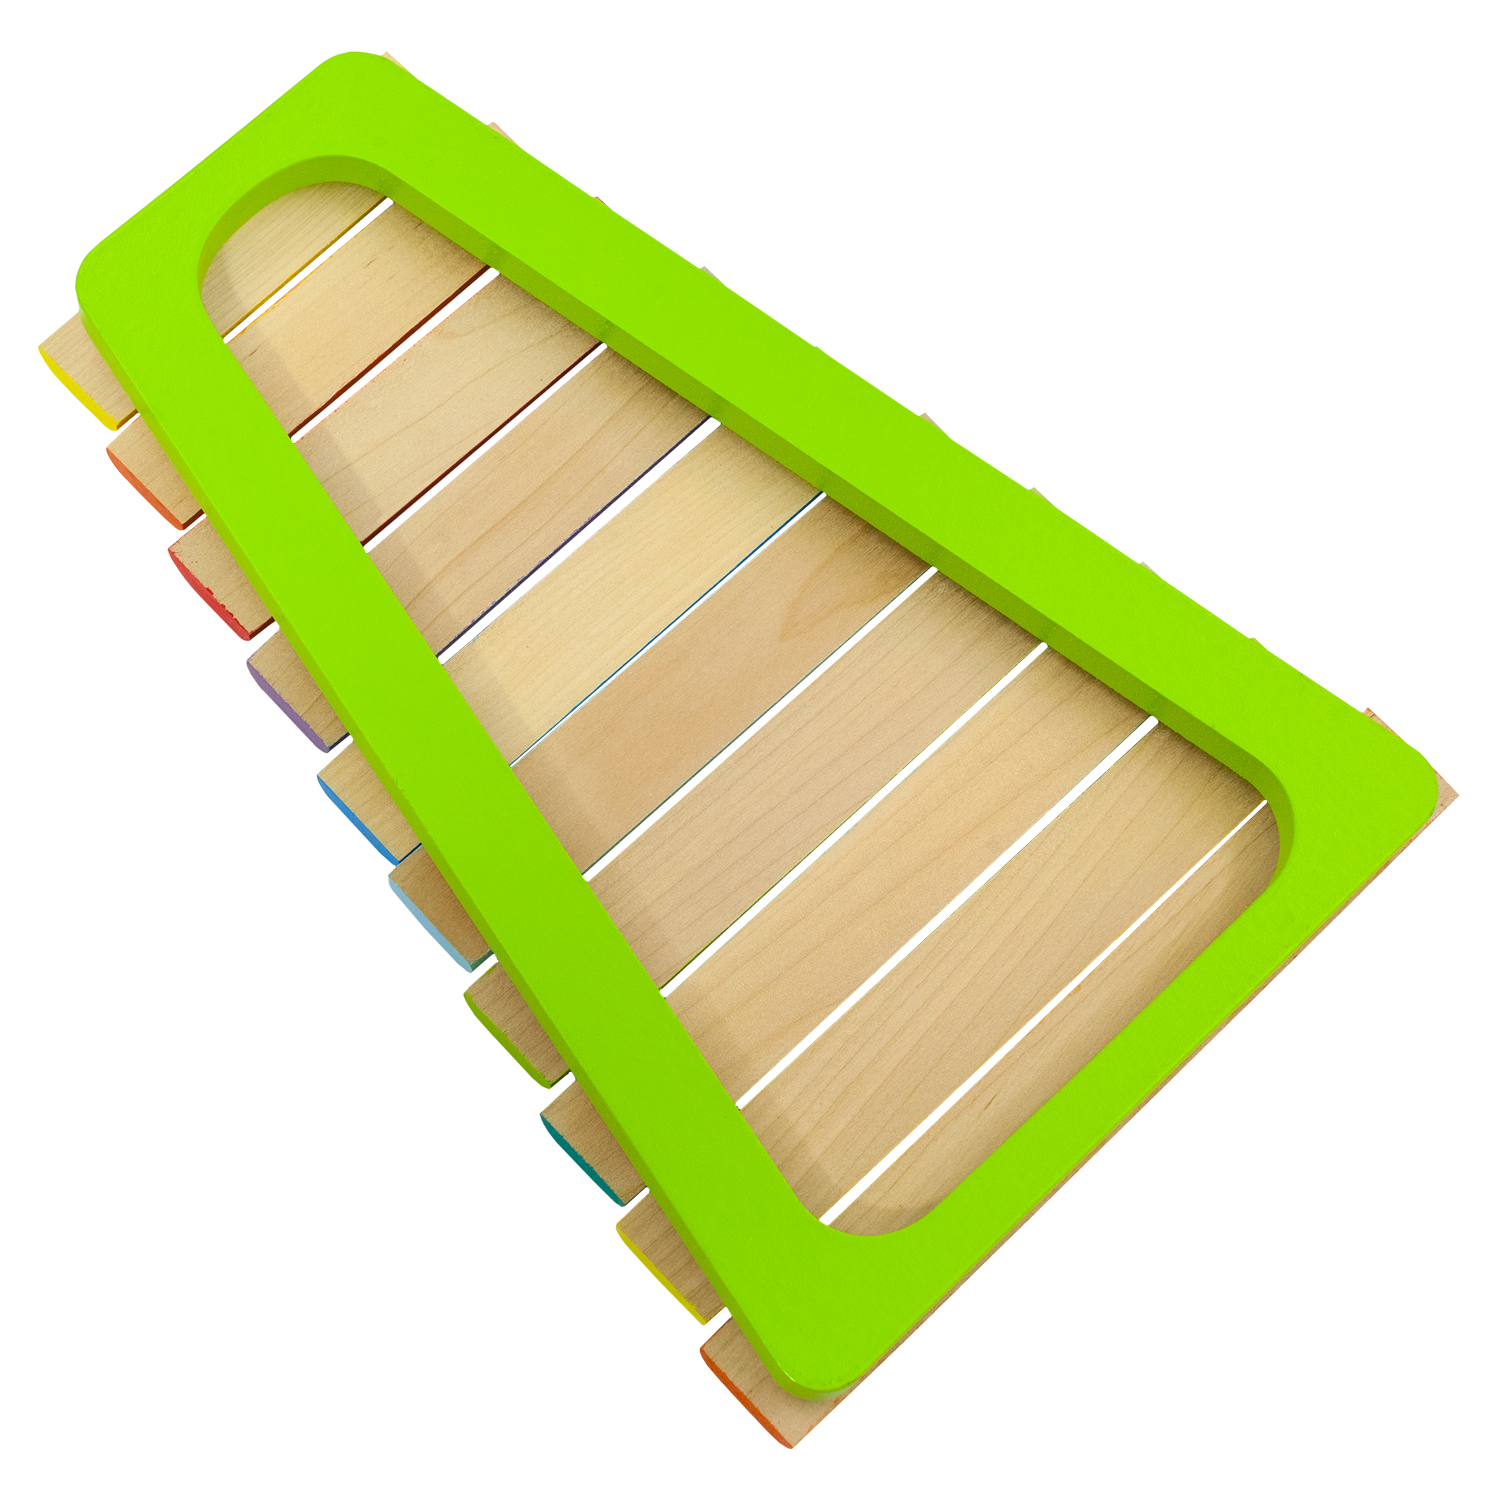 Ксилофон цветные ступеньки Алатойс 10 планок + гайд с играми - фото 14